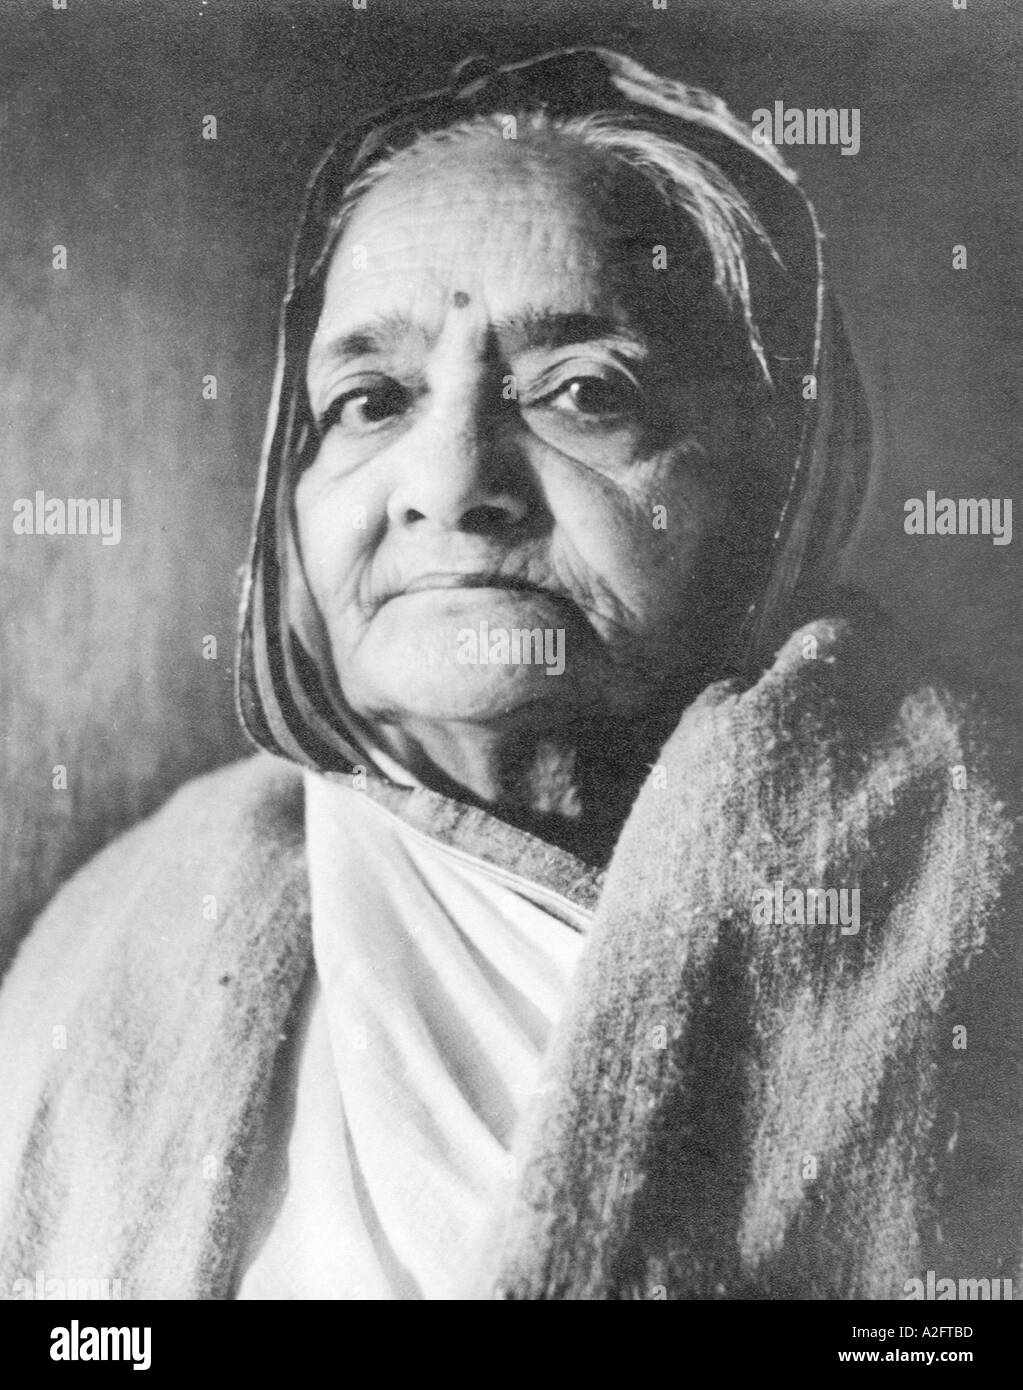 Retrato de esposa Kasturba Gandhi Mahatma Gandhi de la India alrededor de 1940 Foto de stock